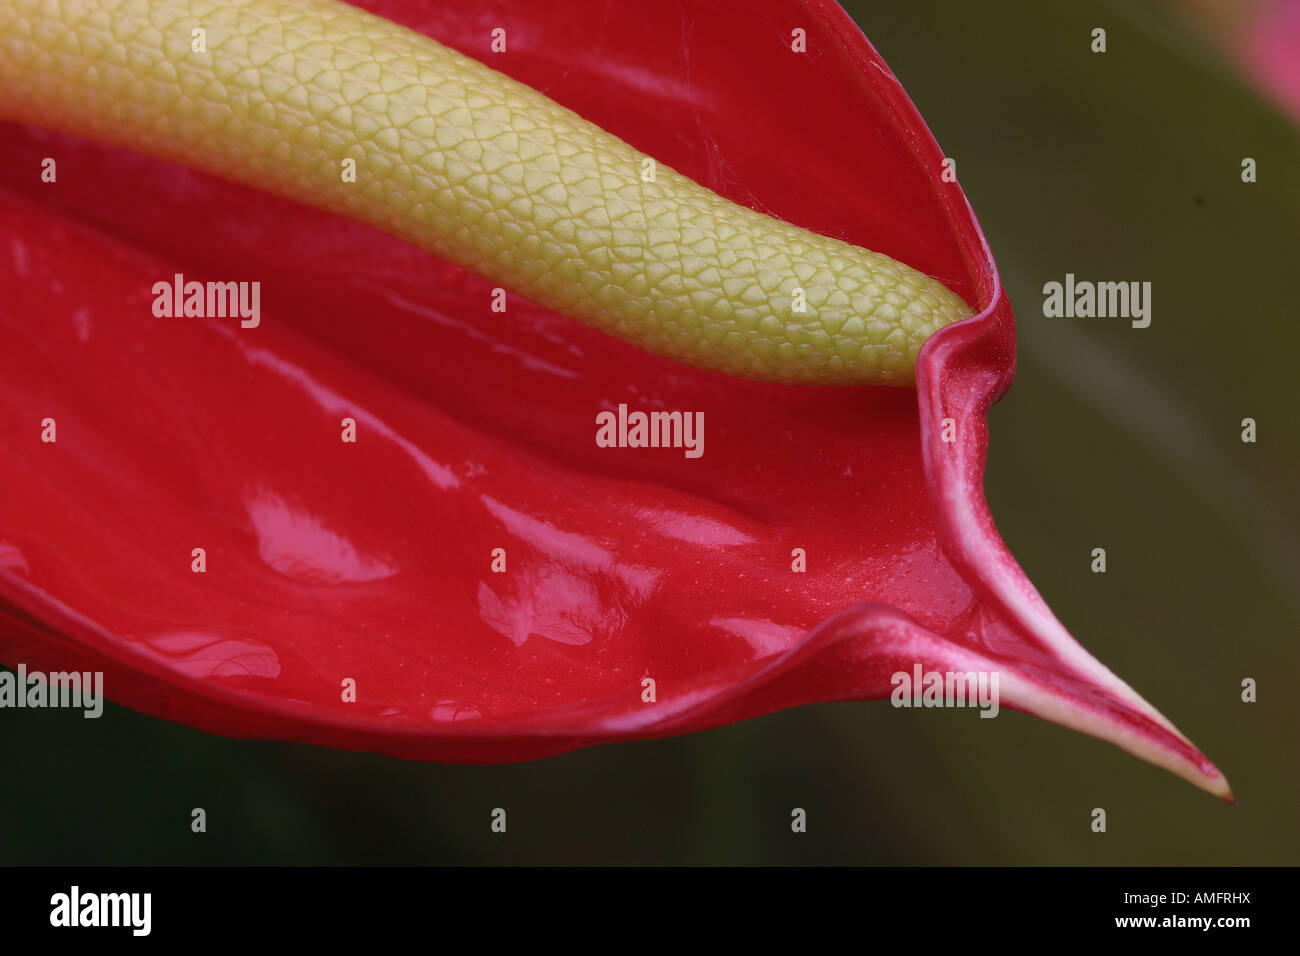 The wonderful Anthurium plant Stock Photo - Alamy